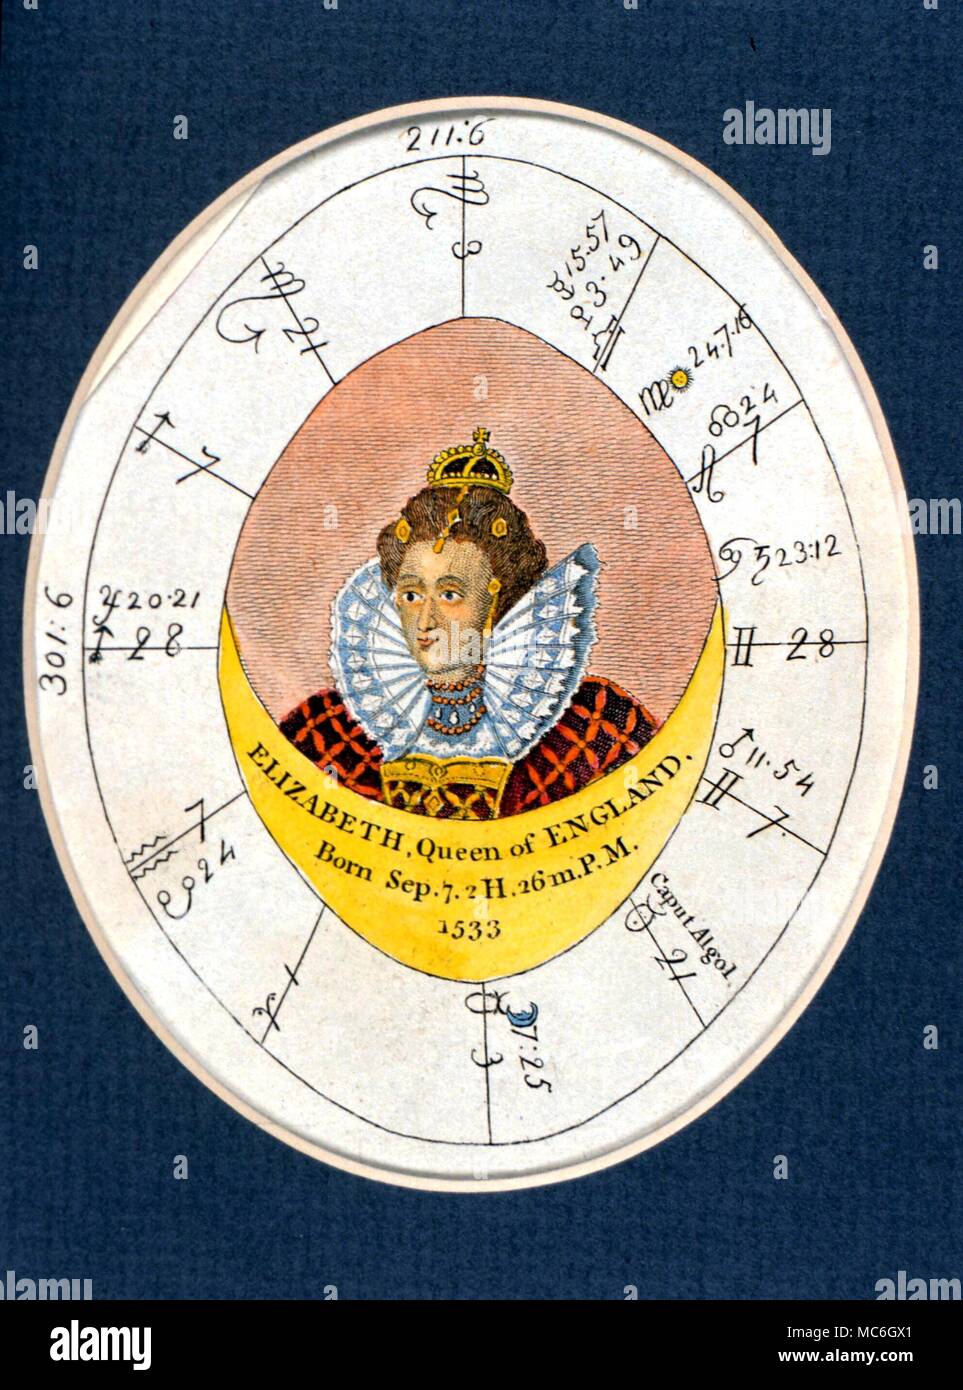 Horoskope - Elizabeth I. Horoskop von Elisabeth I (1533-1603) mit einem aszendenten in Safgittarius, Sonne in Jungfrau (daher der "jungfräulichen Königin") aus der Ausgabe 1790 der Vielleicht ist "Die Wissenschaft der Astrologie oder komplette Abbildung der okkulten Wissenschaften' Stockfoto